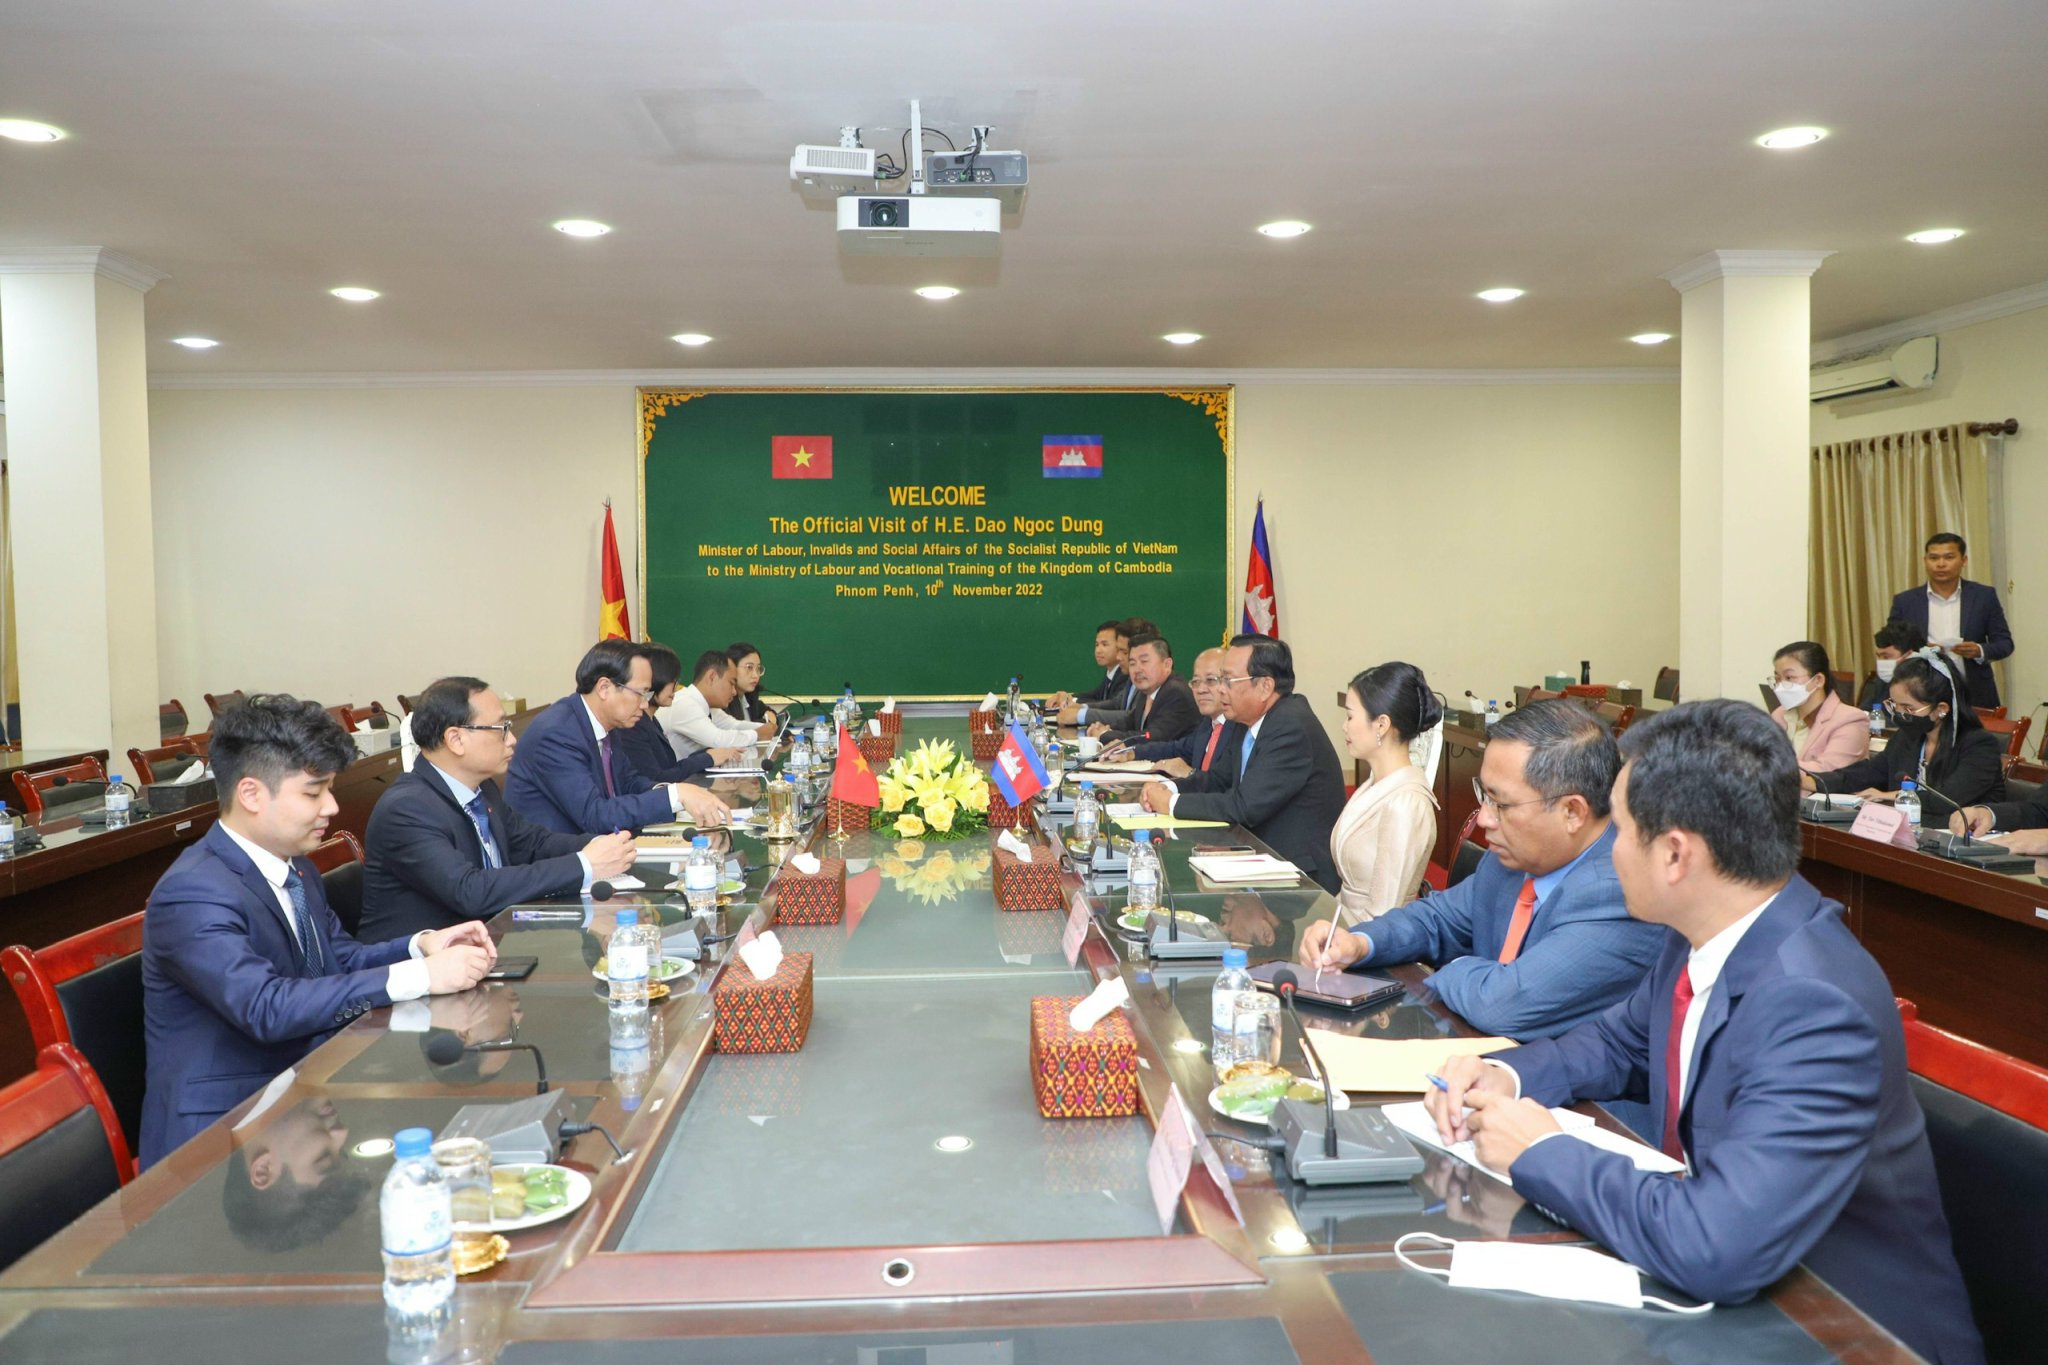 Bộ trưởng Đào Ngọc Dung: Triển khai nhanh thoả thuận hợp tác giữa hai Bộ Lao động Việt Nam -Campuchia trên các lĩnh vực cụ thể